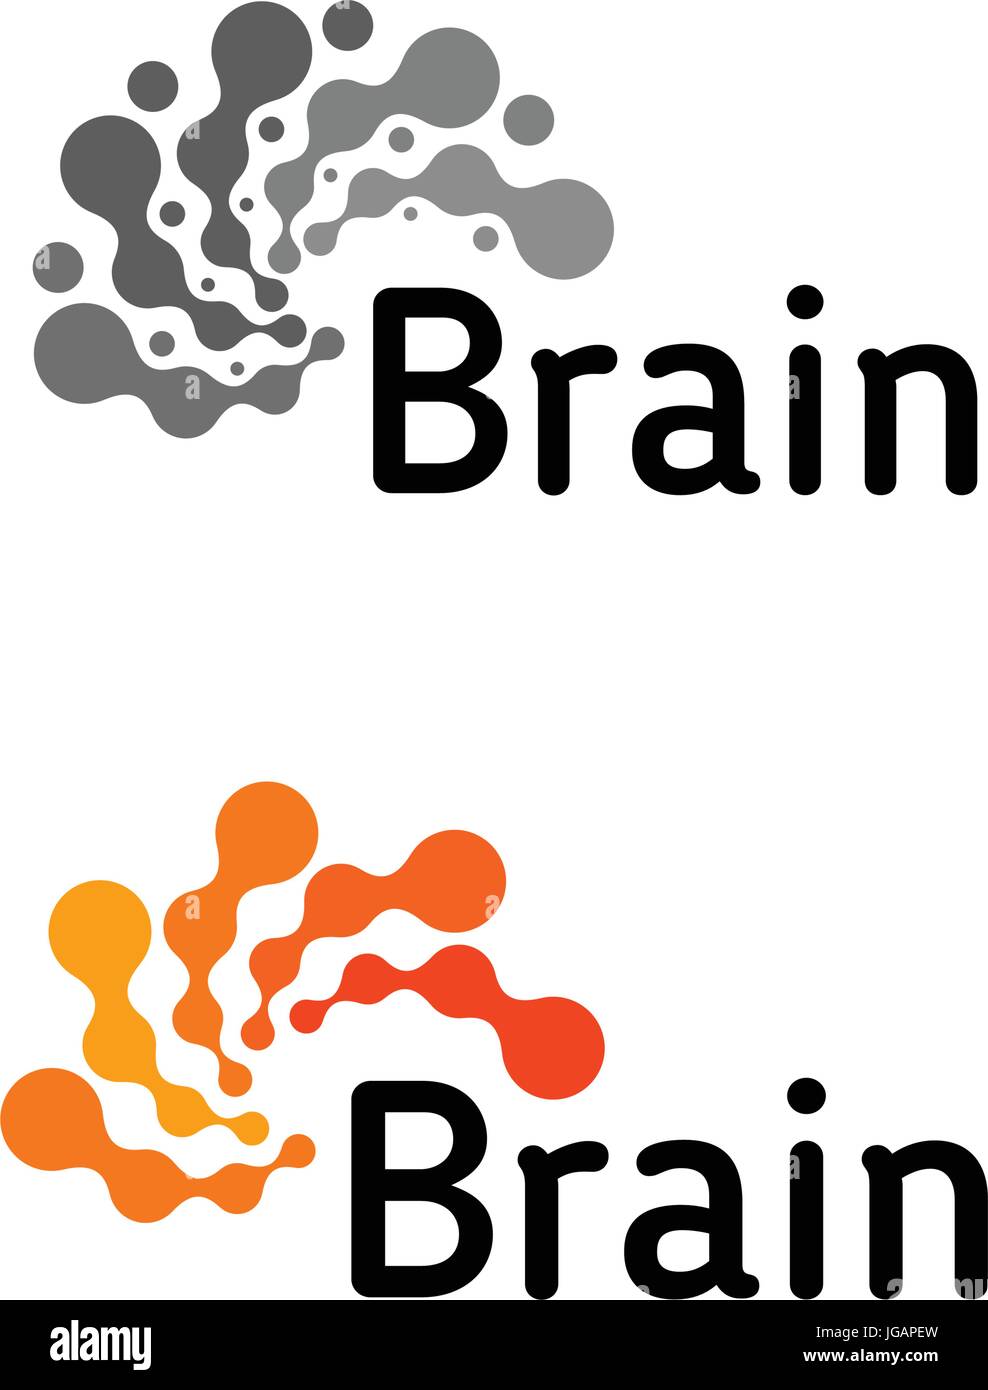 Gehirn-Logo Silhouette Vektor Entwurfsvorlage. Denke Idee Konzept. Brainstorming macht denken Gehirn Logo Symbol grau Schriftzug. Stock Vektor